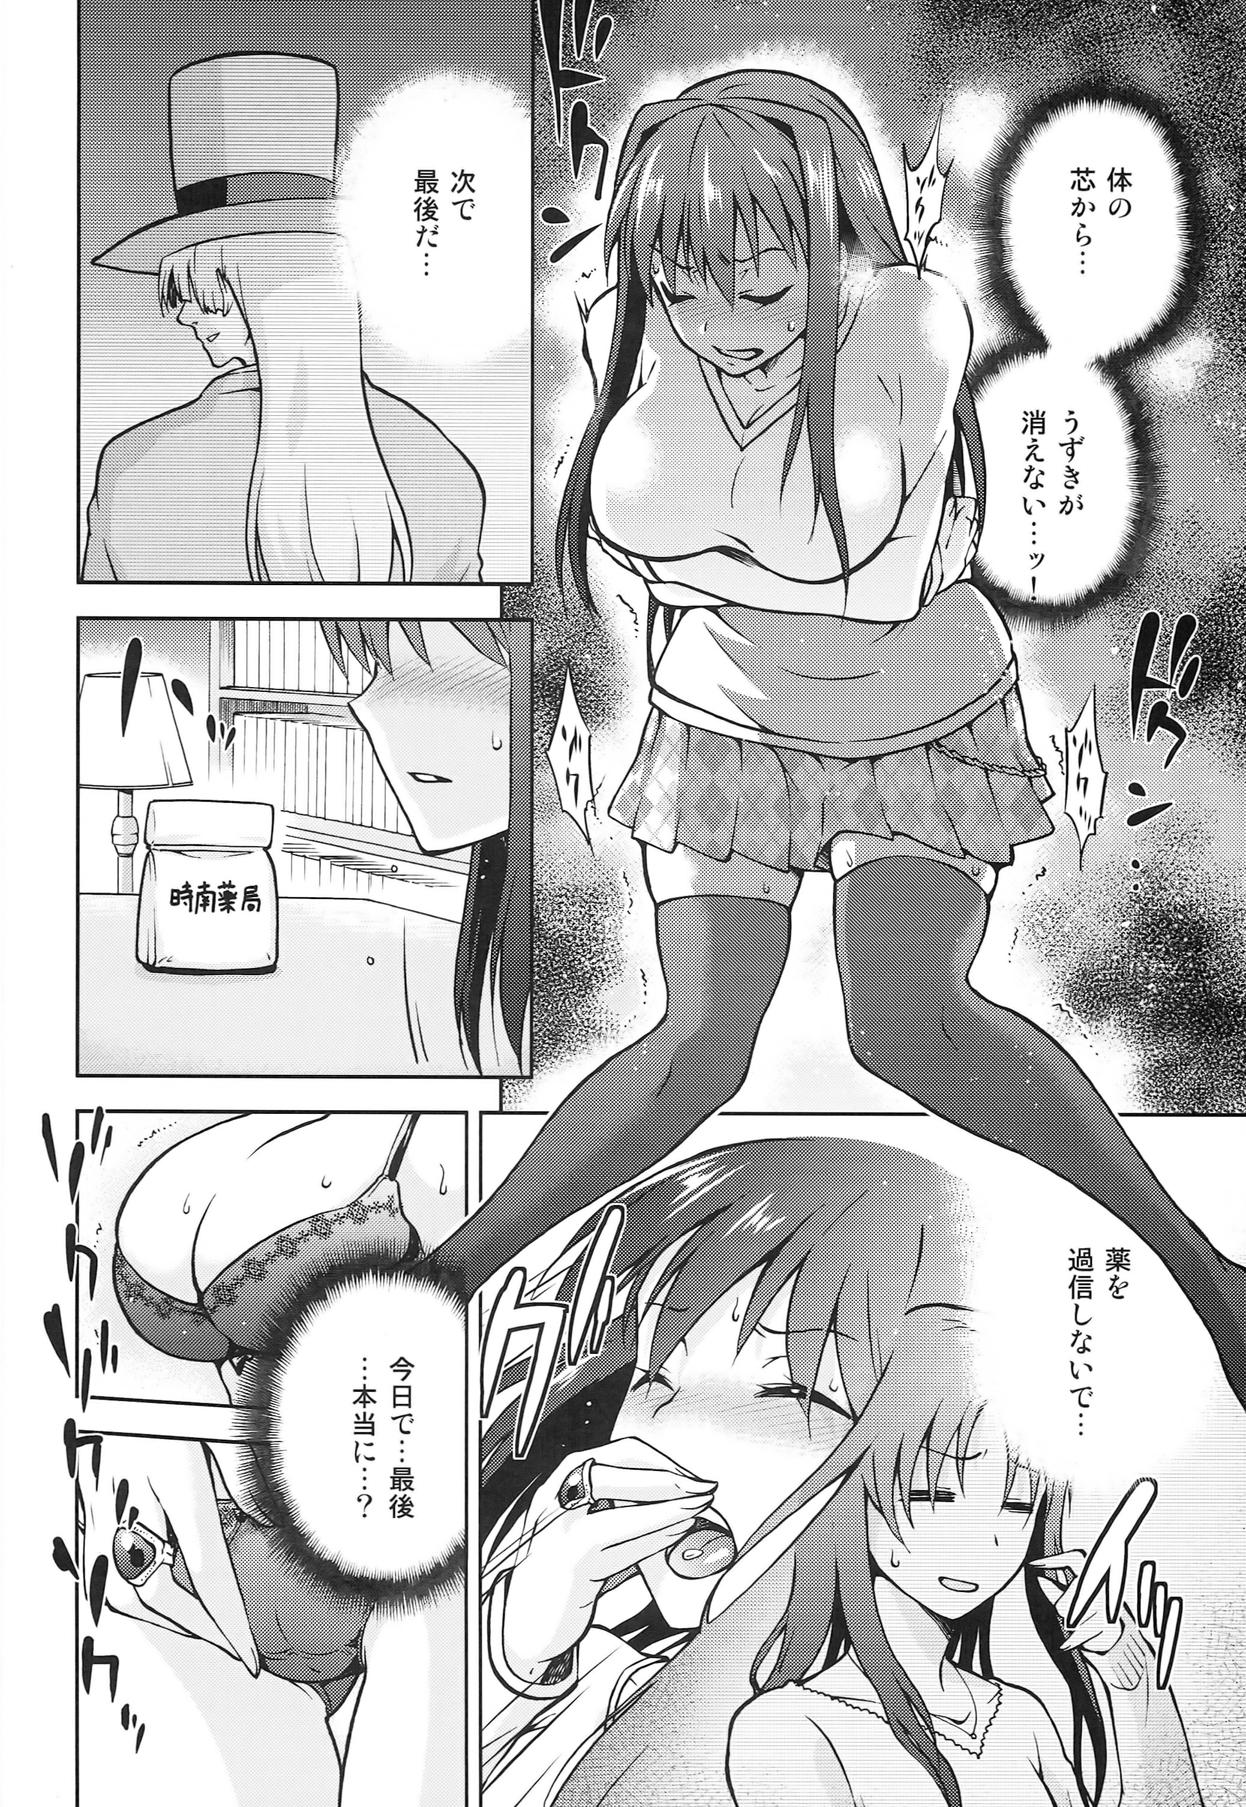 Bubblebutt Aoko BLUE5 Zenpen - Mahou tsukai no yoru Threesome - Page 6